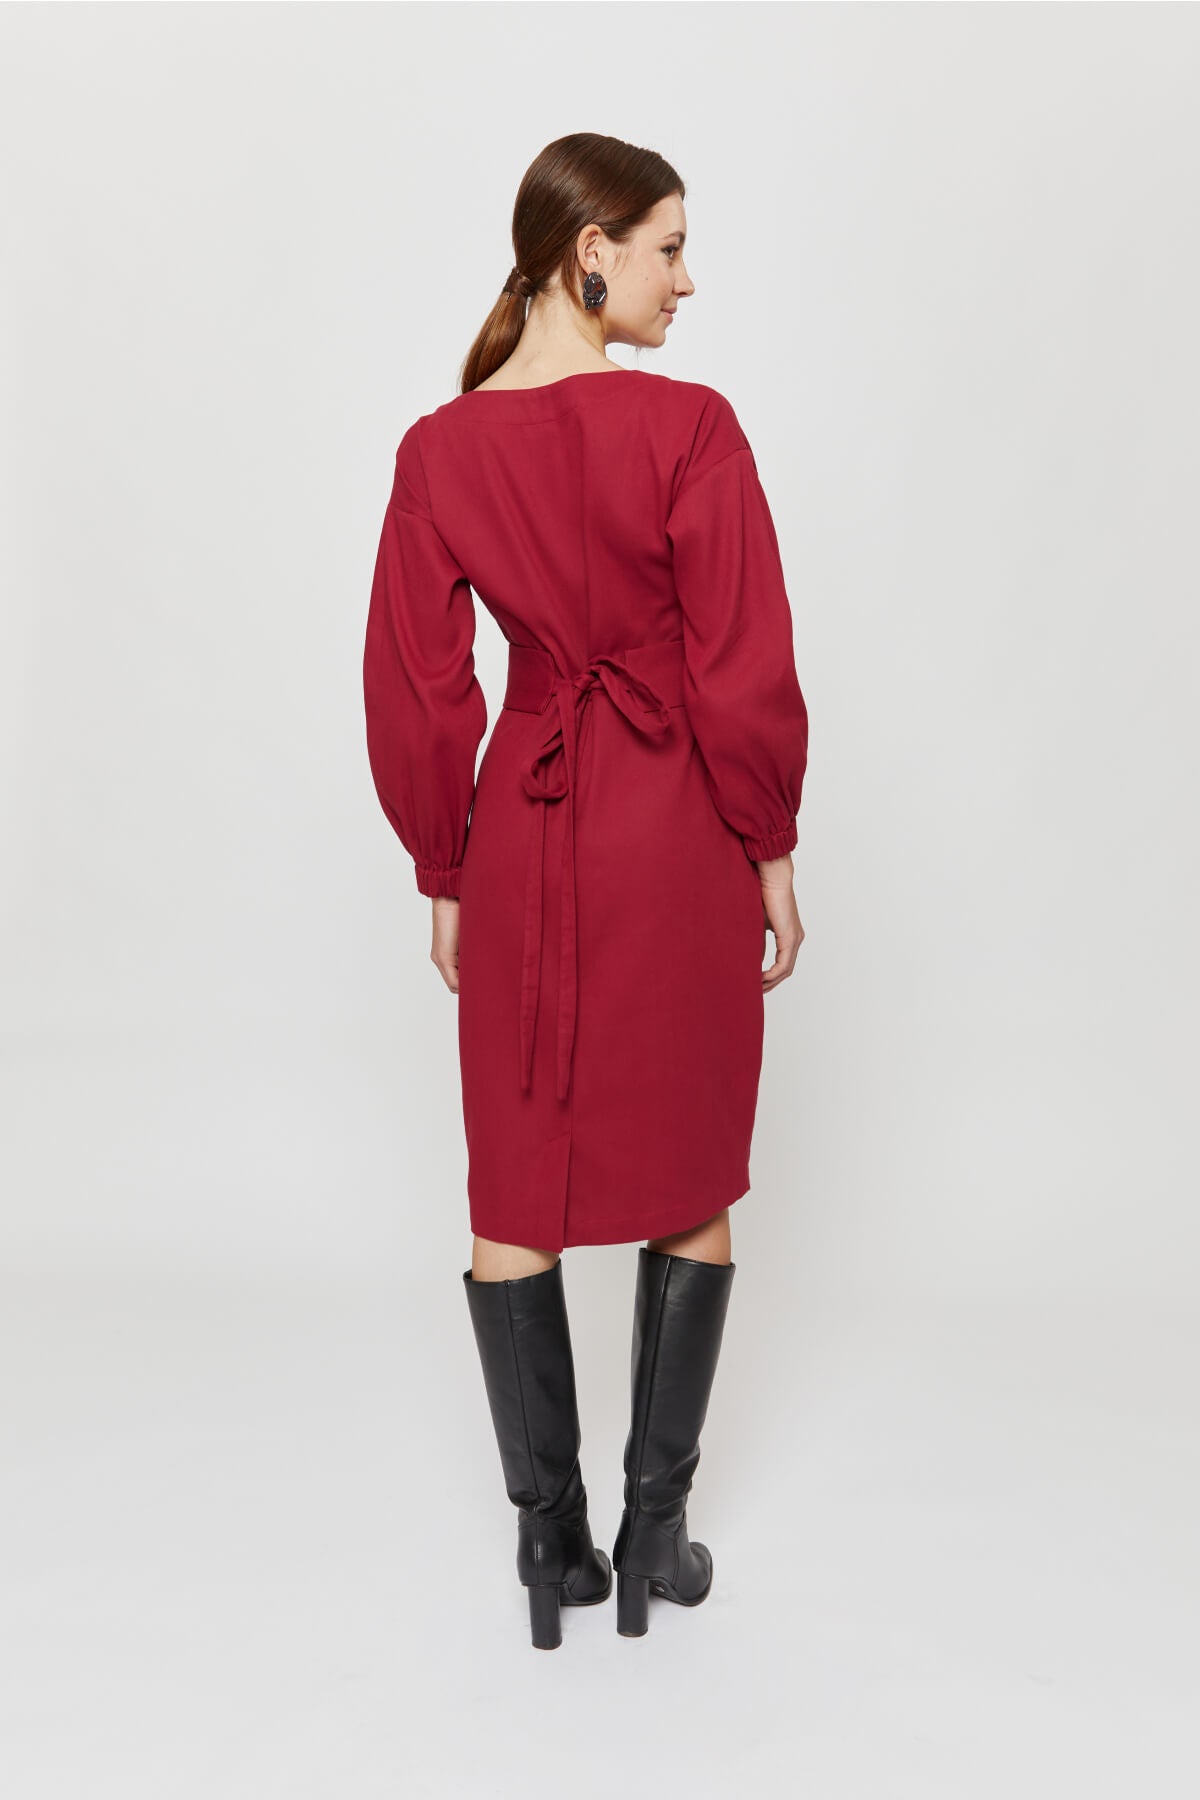 Stefanie | Winter Dress with Kimono Belt in Red-Bordo